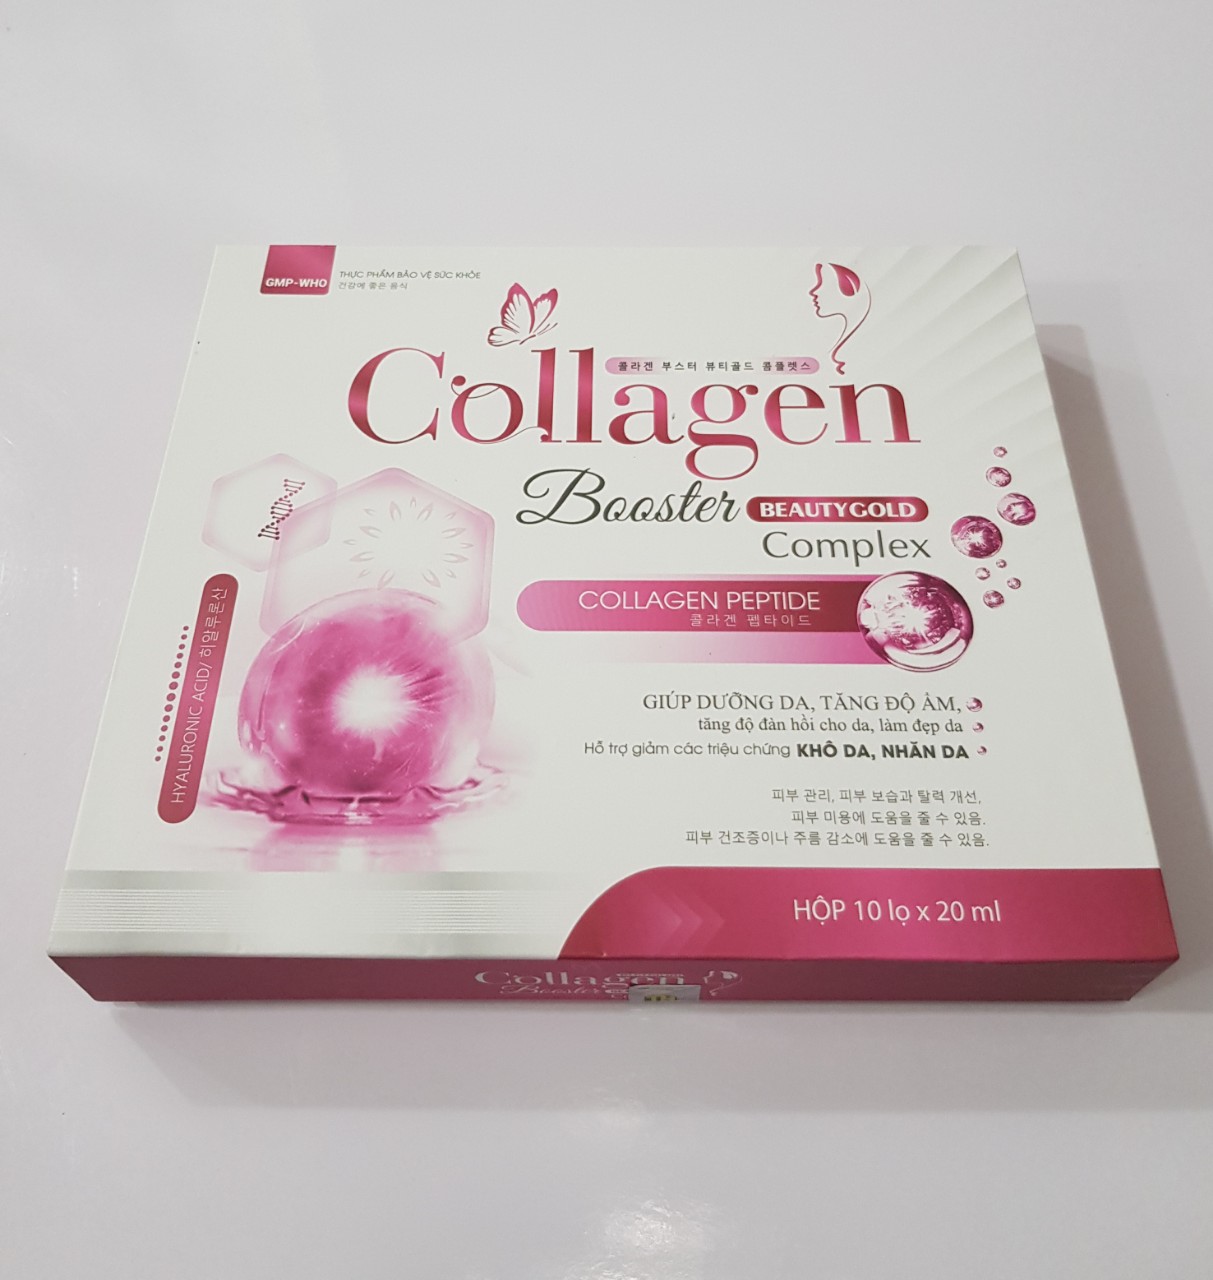 Dung dịch uống Collagen : Giúp dưỡng da, làm đẹp da, tăng độ ẩm, độ đàn hồi cho da.